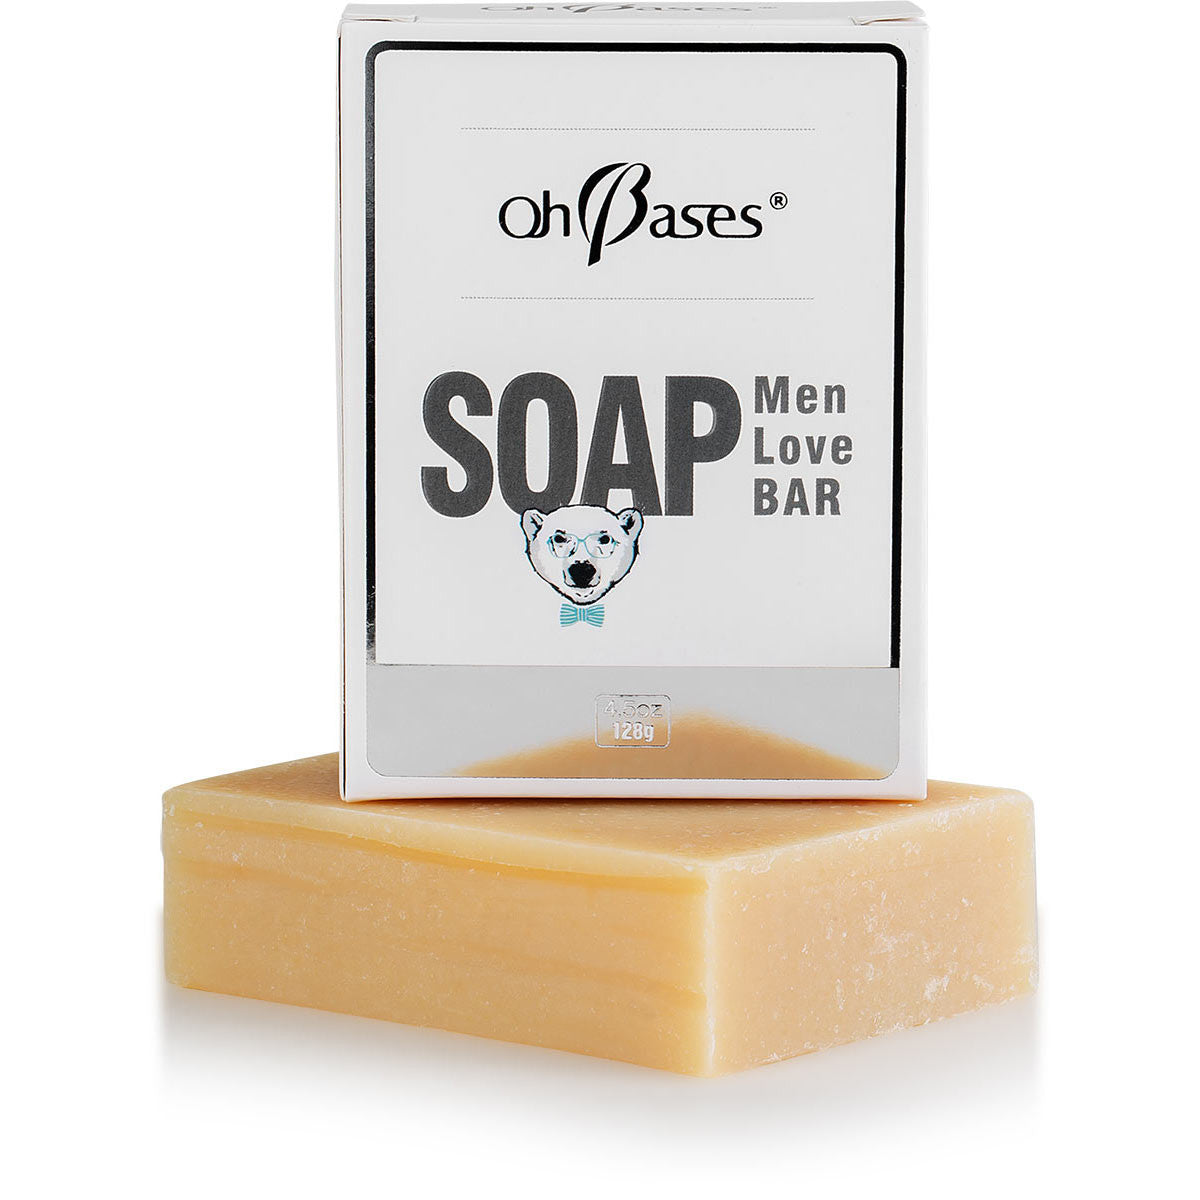 https://www.ohbases.com/cdn/shop/products/men-love-bar-soap-128g-ohbases-3.jpg?v=1527269028&width=1445